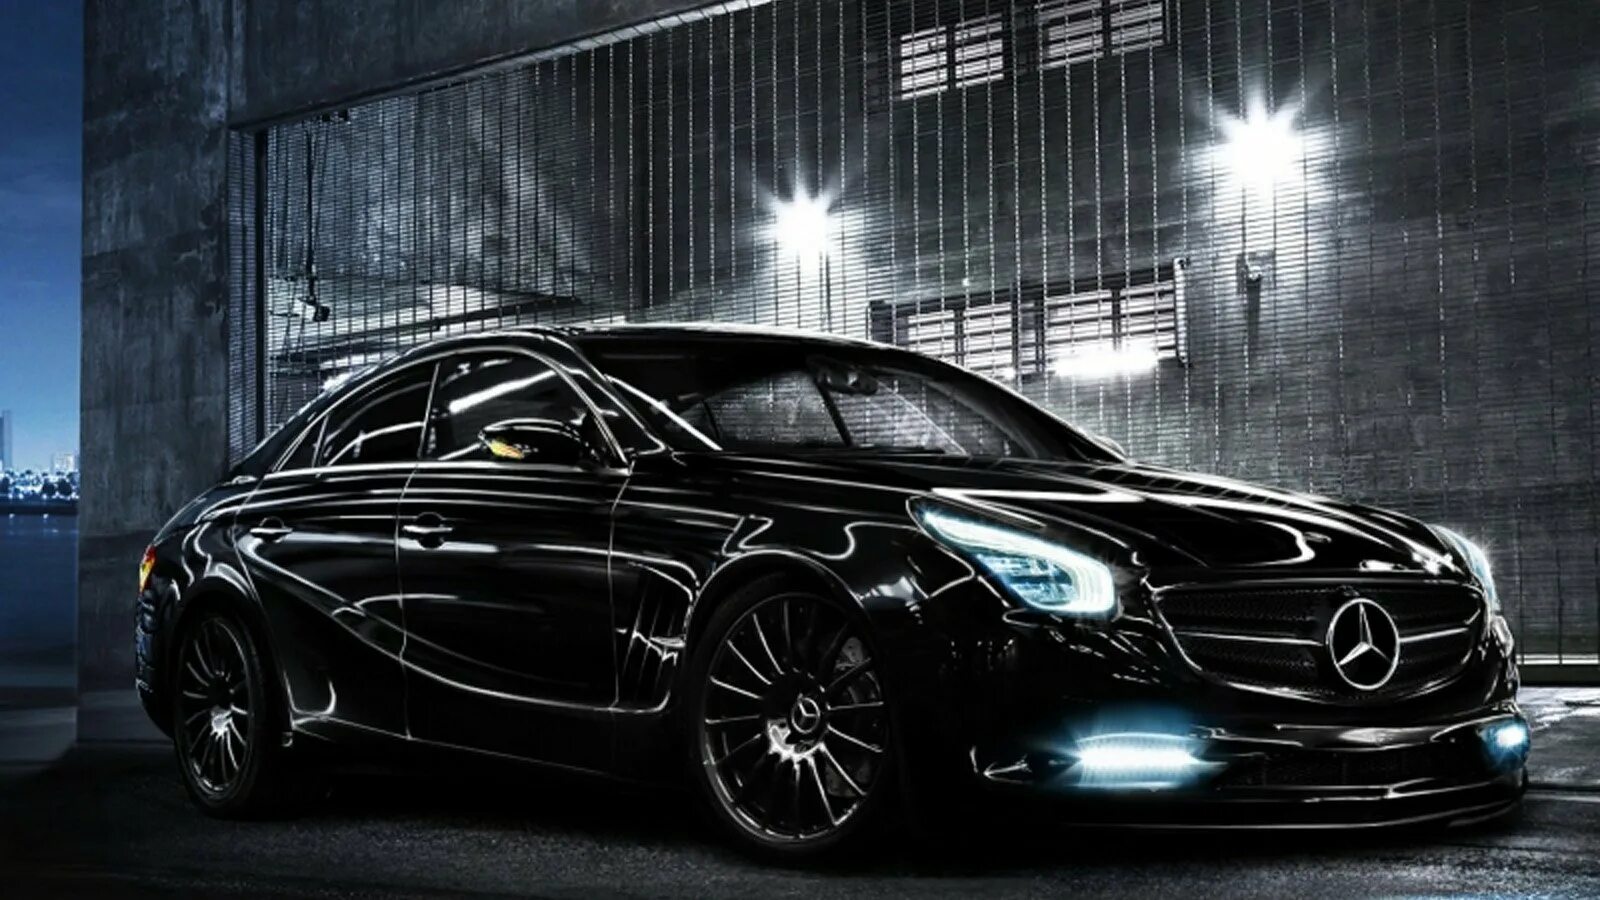 Мерседес на черном фоне. Мерседес АМГ черный. Mercedes Benz CLS. Черный Мерседес АМГ 64. Машина Мерседес АМГ черный.